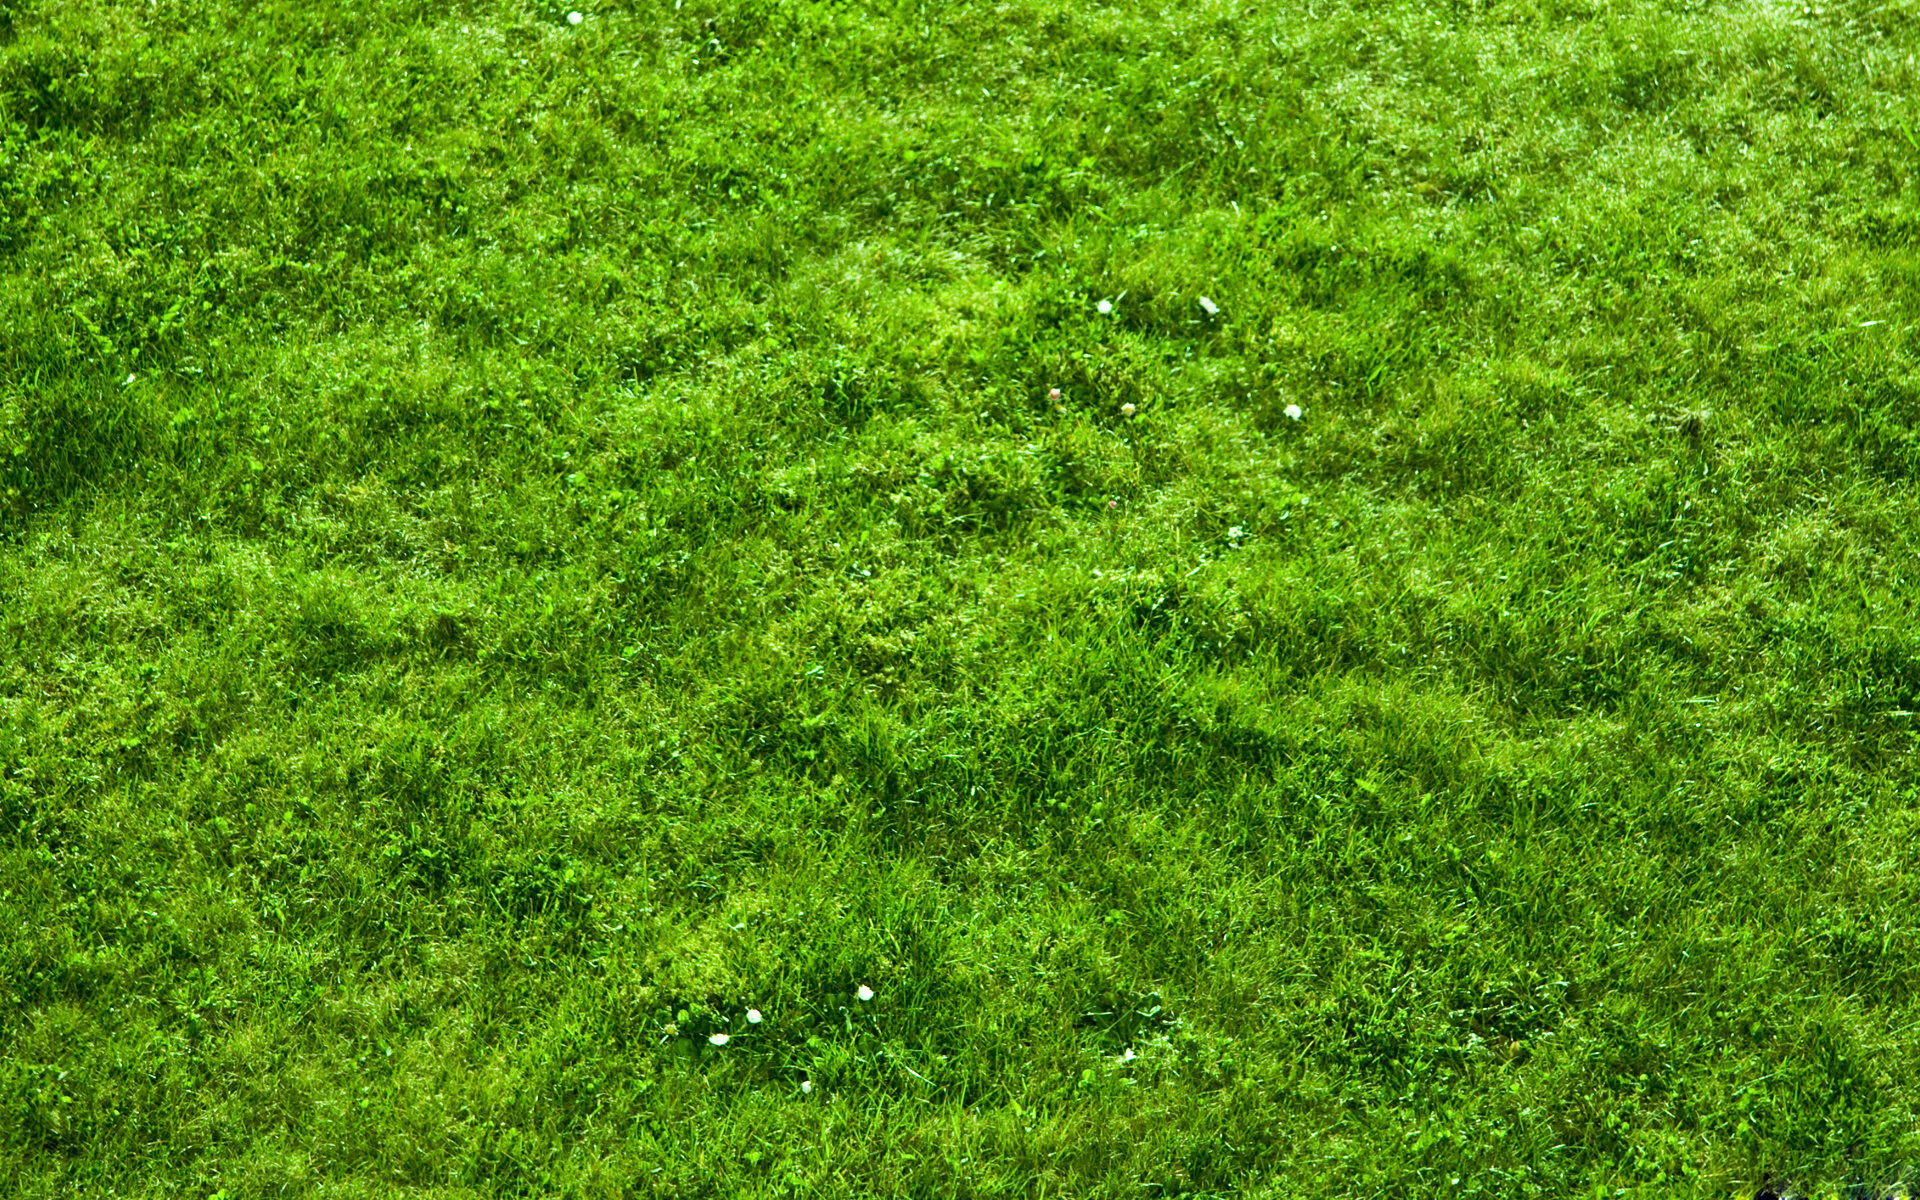 Grass Backgrounds Free | PixelsTalk.Net